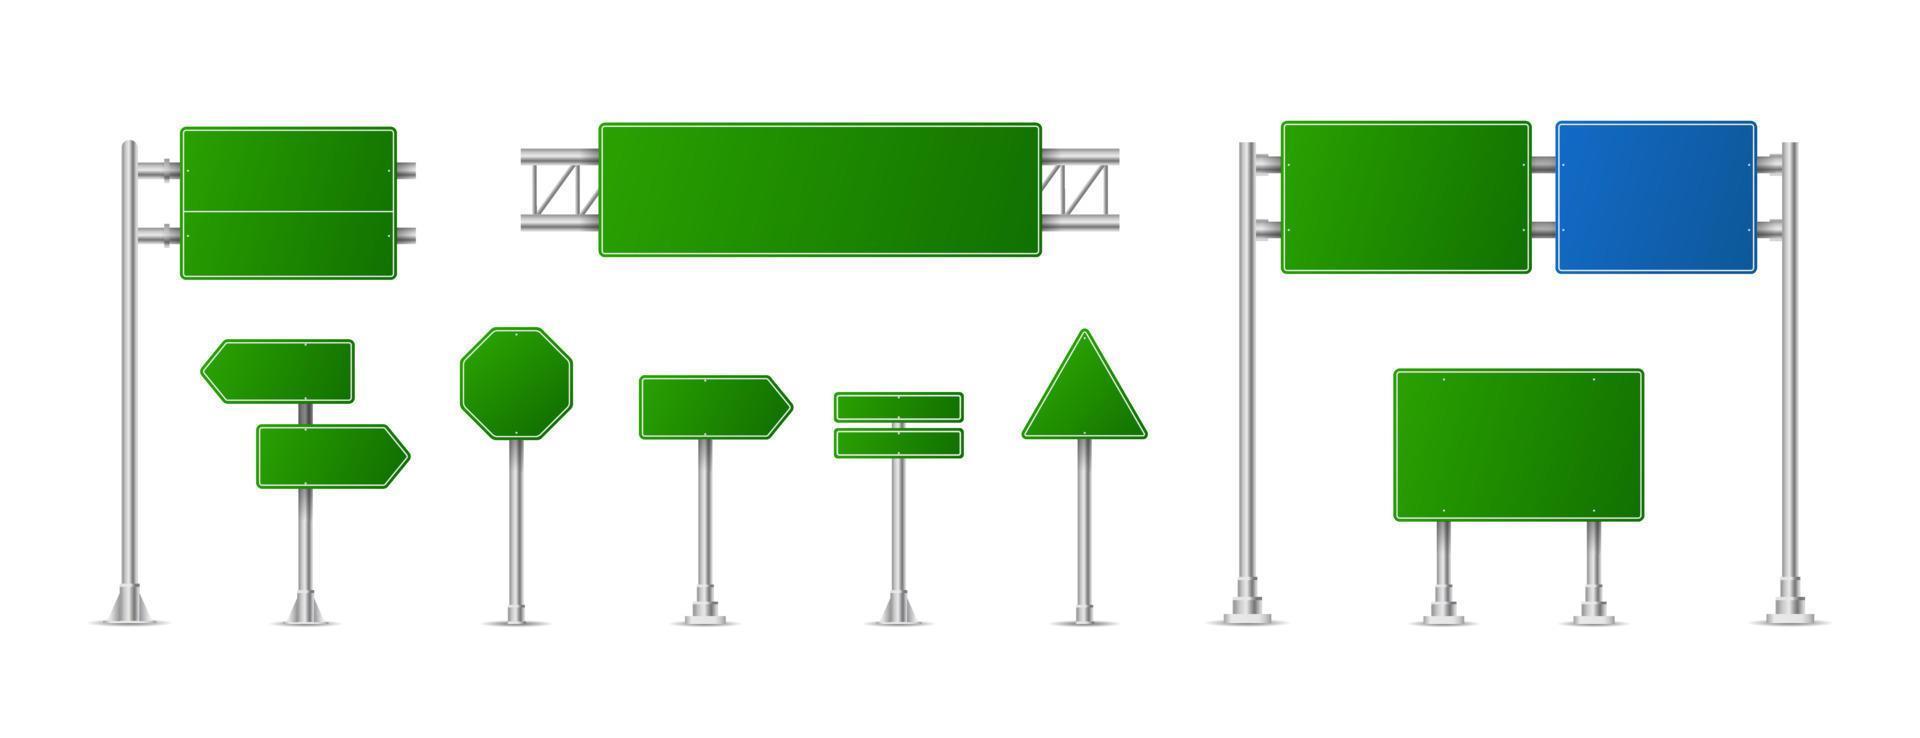 realistische groene straat- en verkeersborden. stad illustratie vector. straat verkeersbord mockup geïsoleerd, uithangbord of wegwijzer richting mock up afbeelding vector